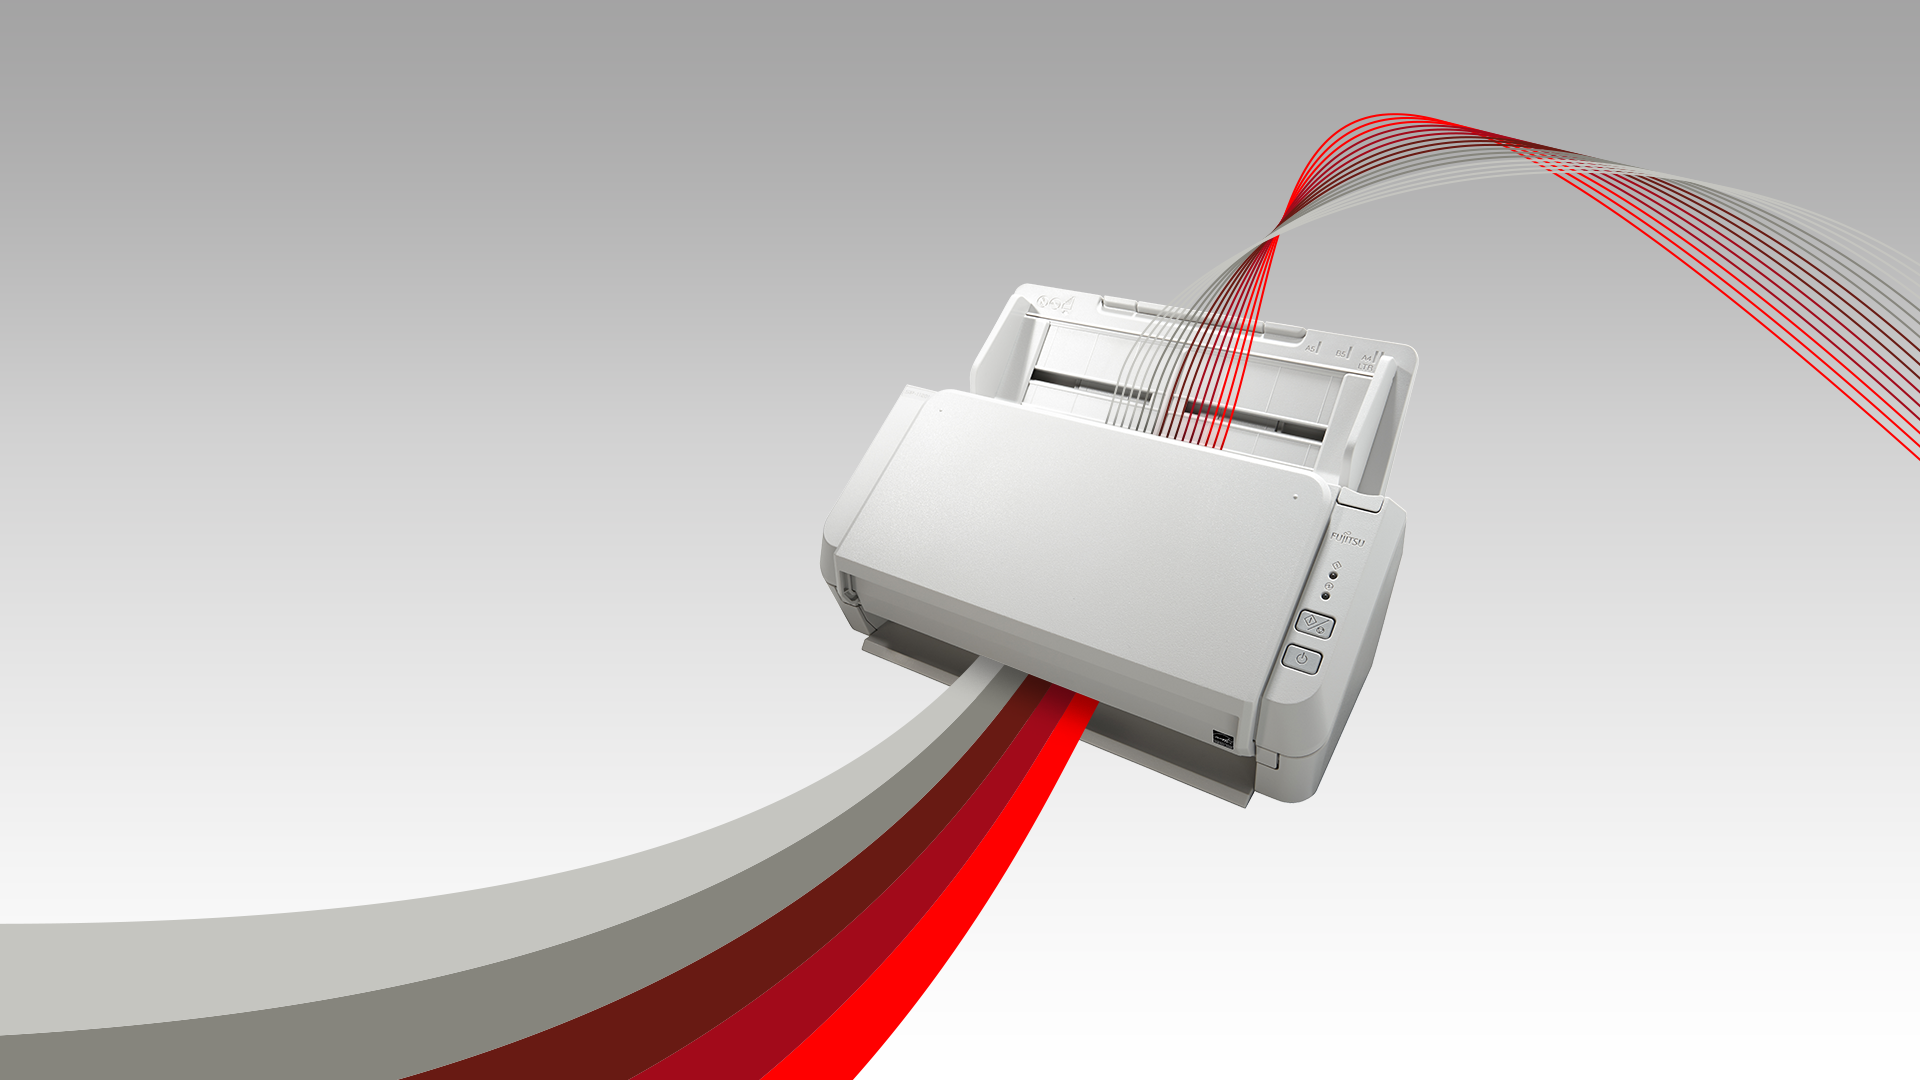 Fujitsu SP-1130Ne Scanner de documents duplex couleur facile à utiliser  avec distributeur automatique de documents (ADF) et Twain Driver :  : Informatique